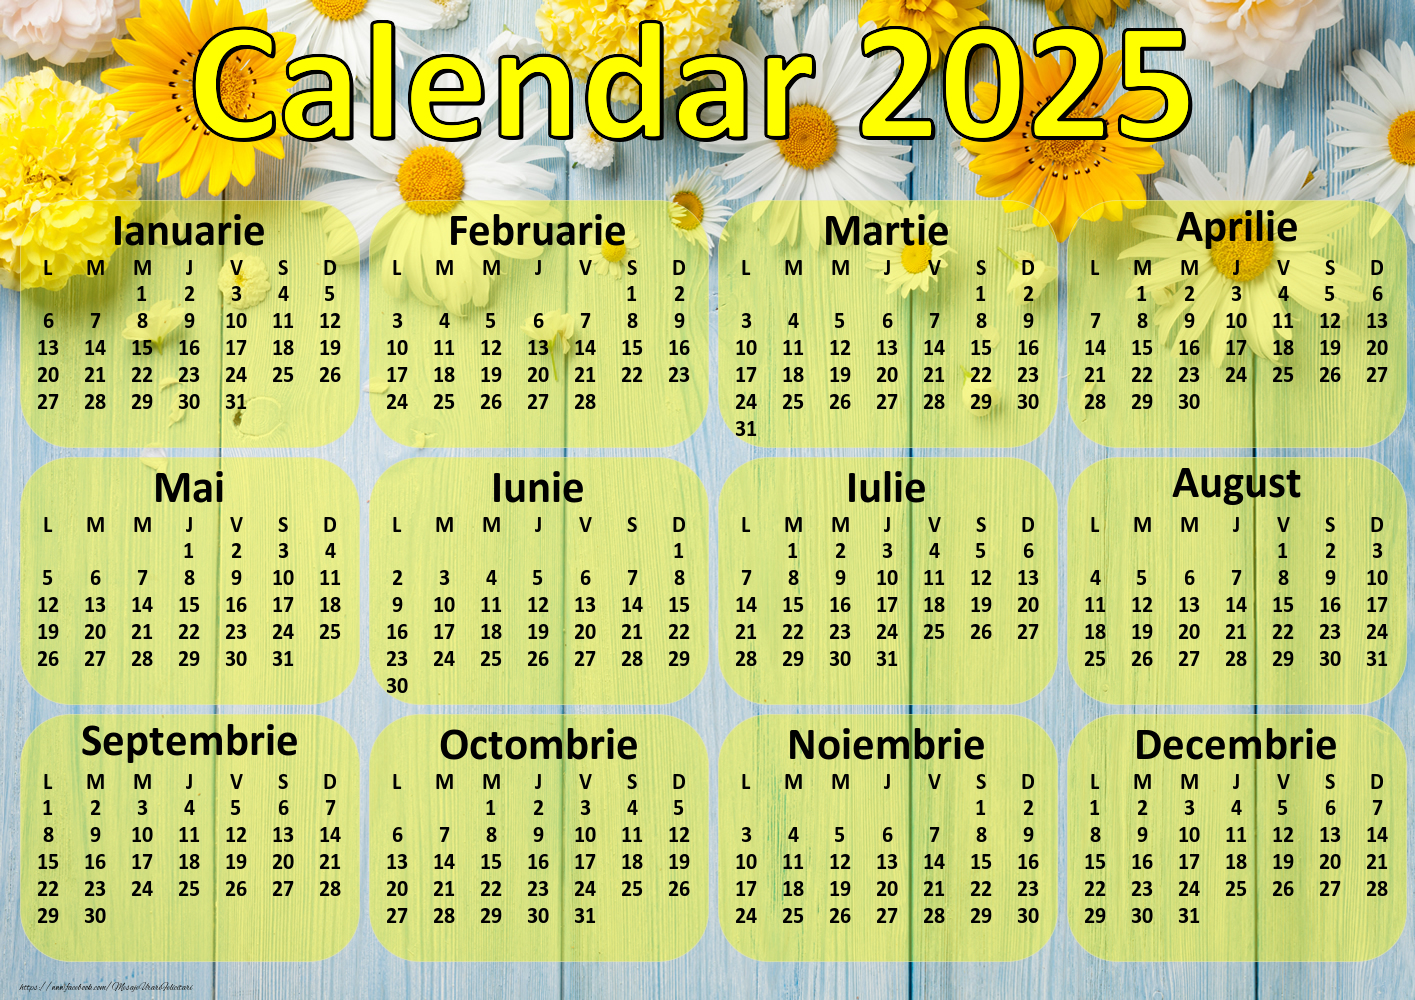 Calendare Calendar 2025 - Flori - Model 0037